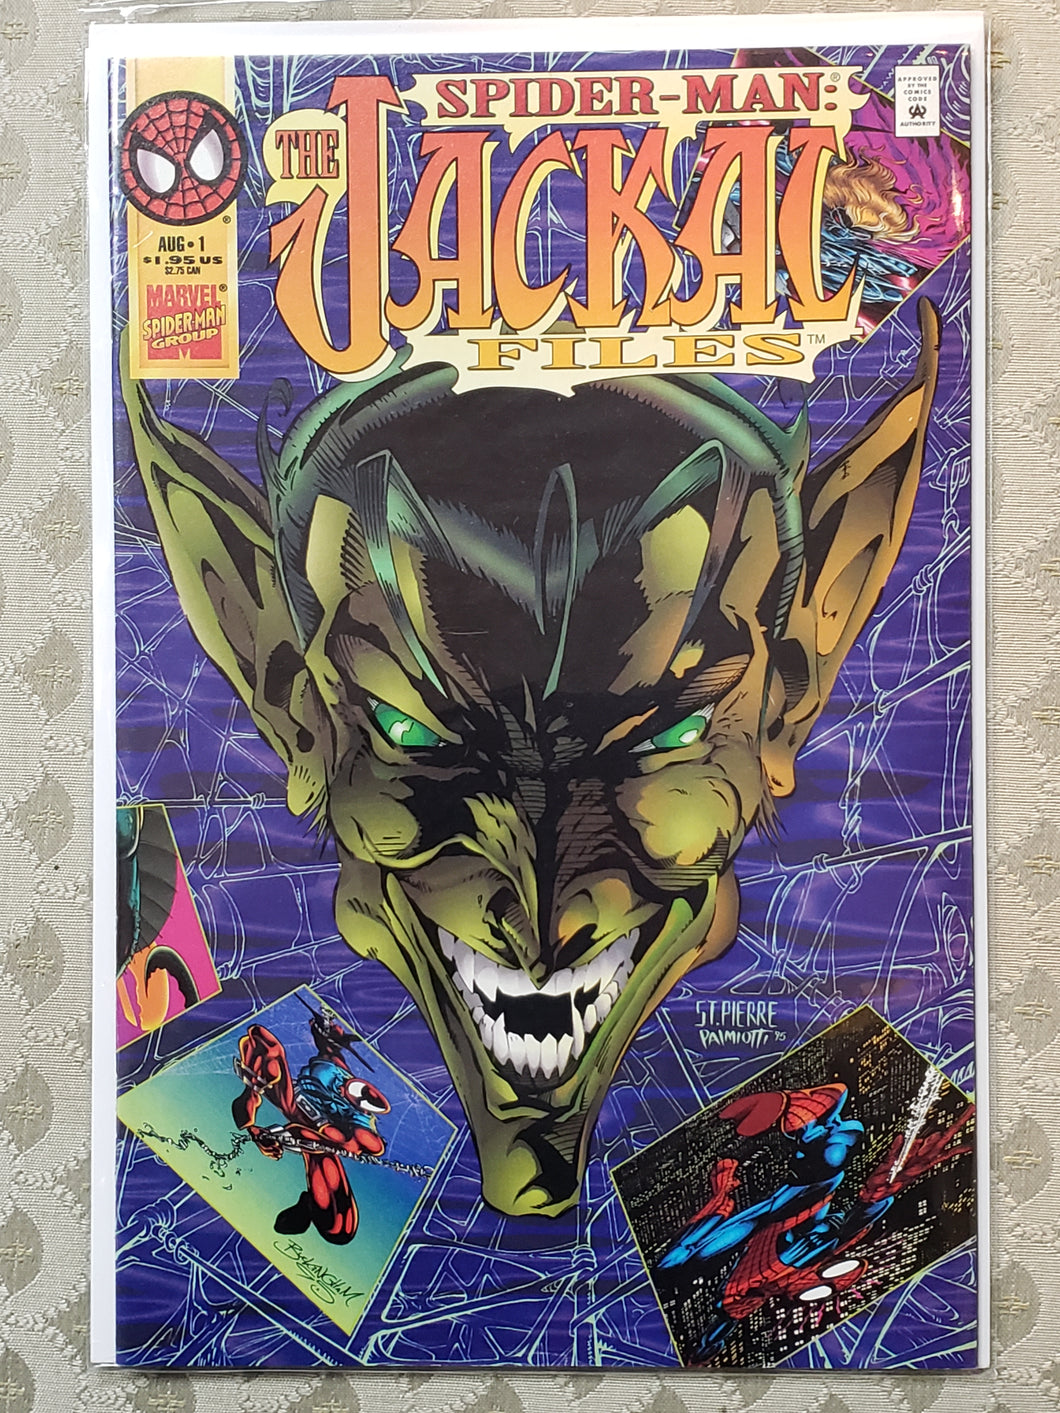 SPIDER-MAN: JACKAL FILES #1 (1995-08) Vol 1 MARVEL Clone Saga F/VF